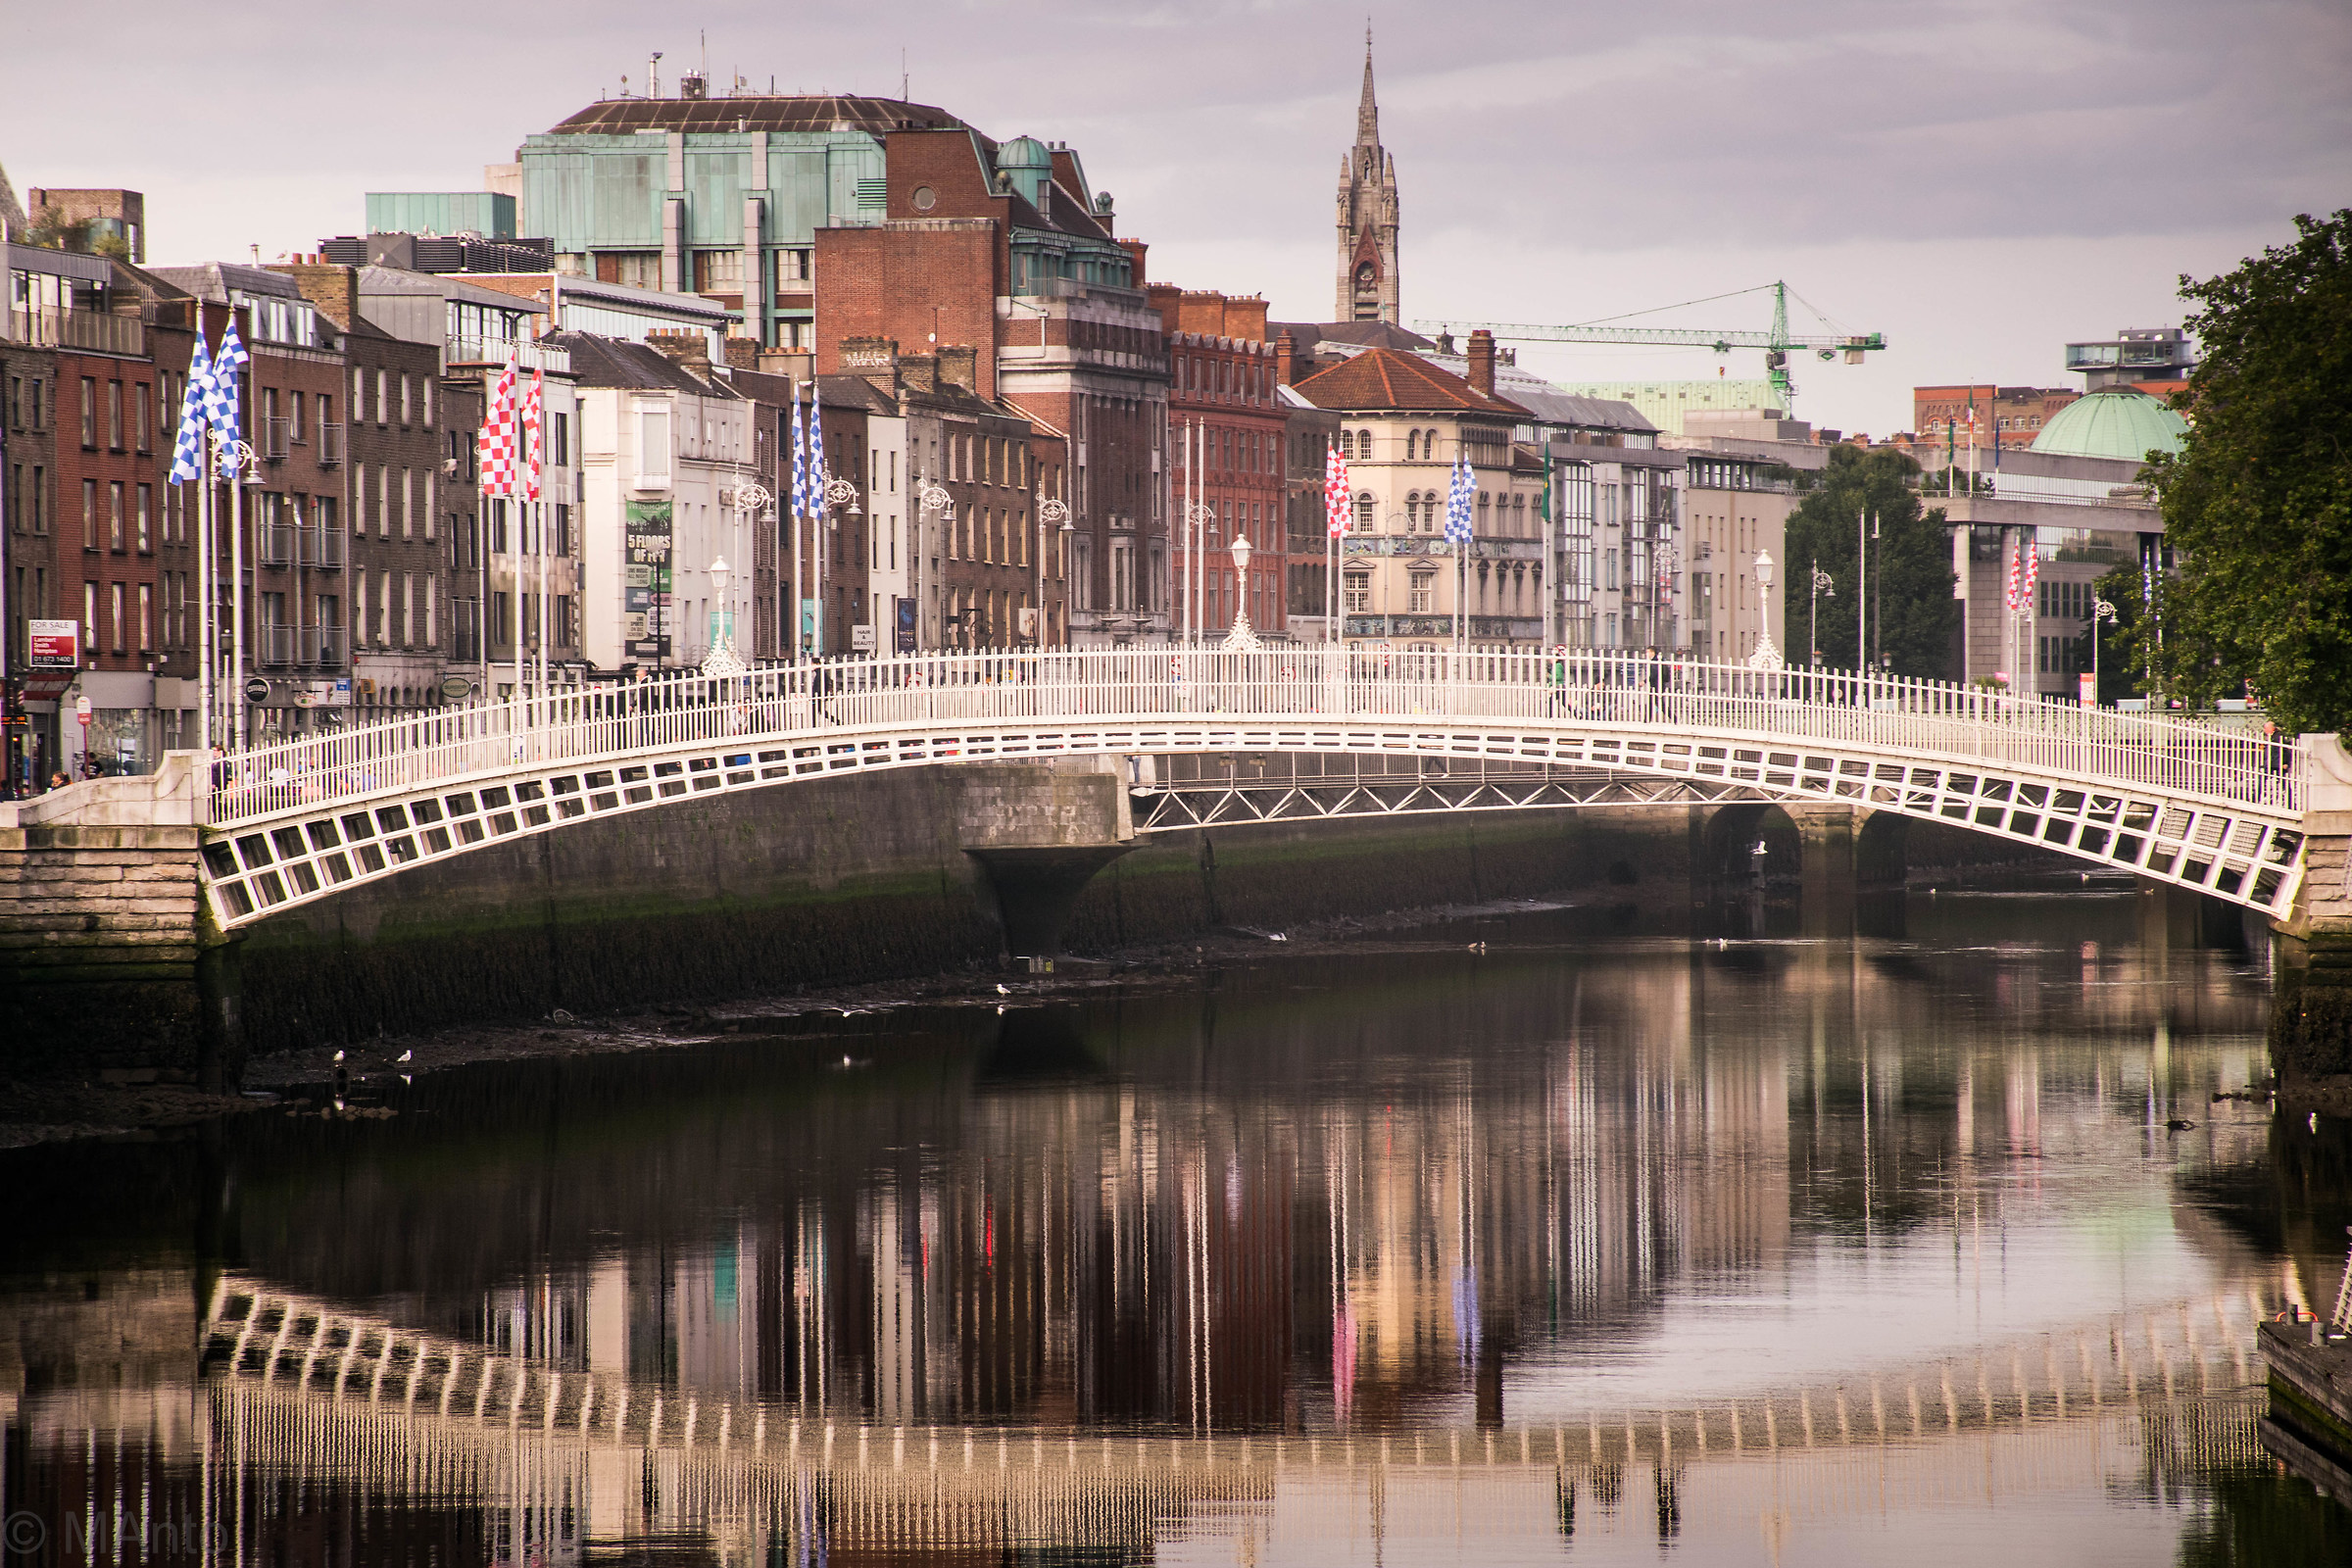 Dublin Bridges - Has Penny Bridge...